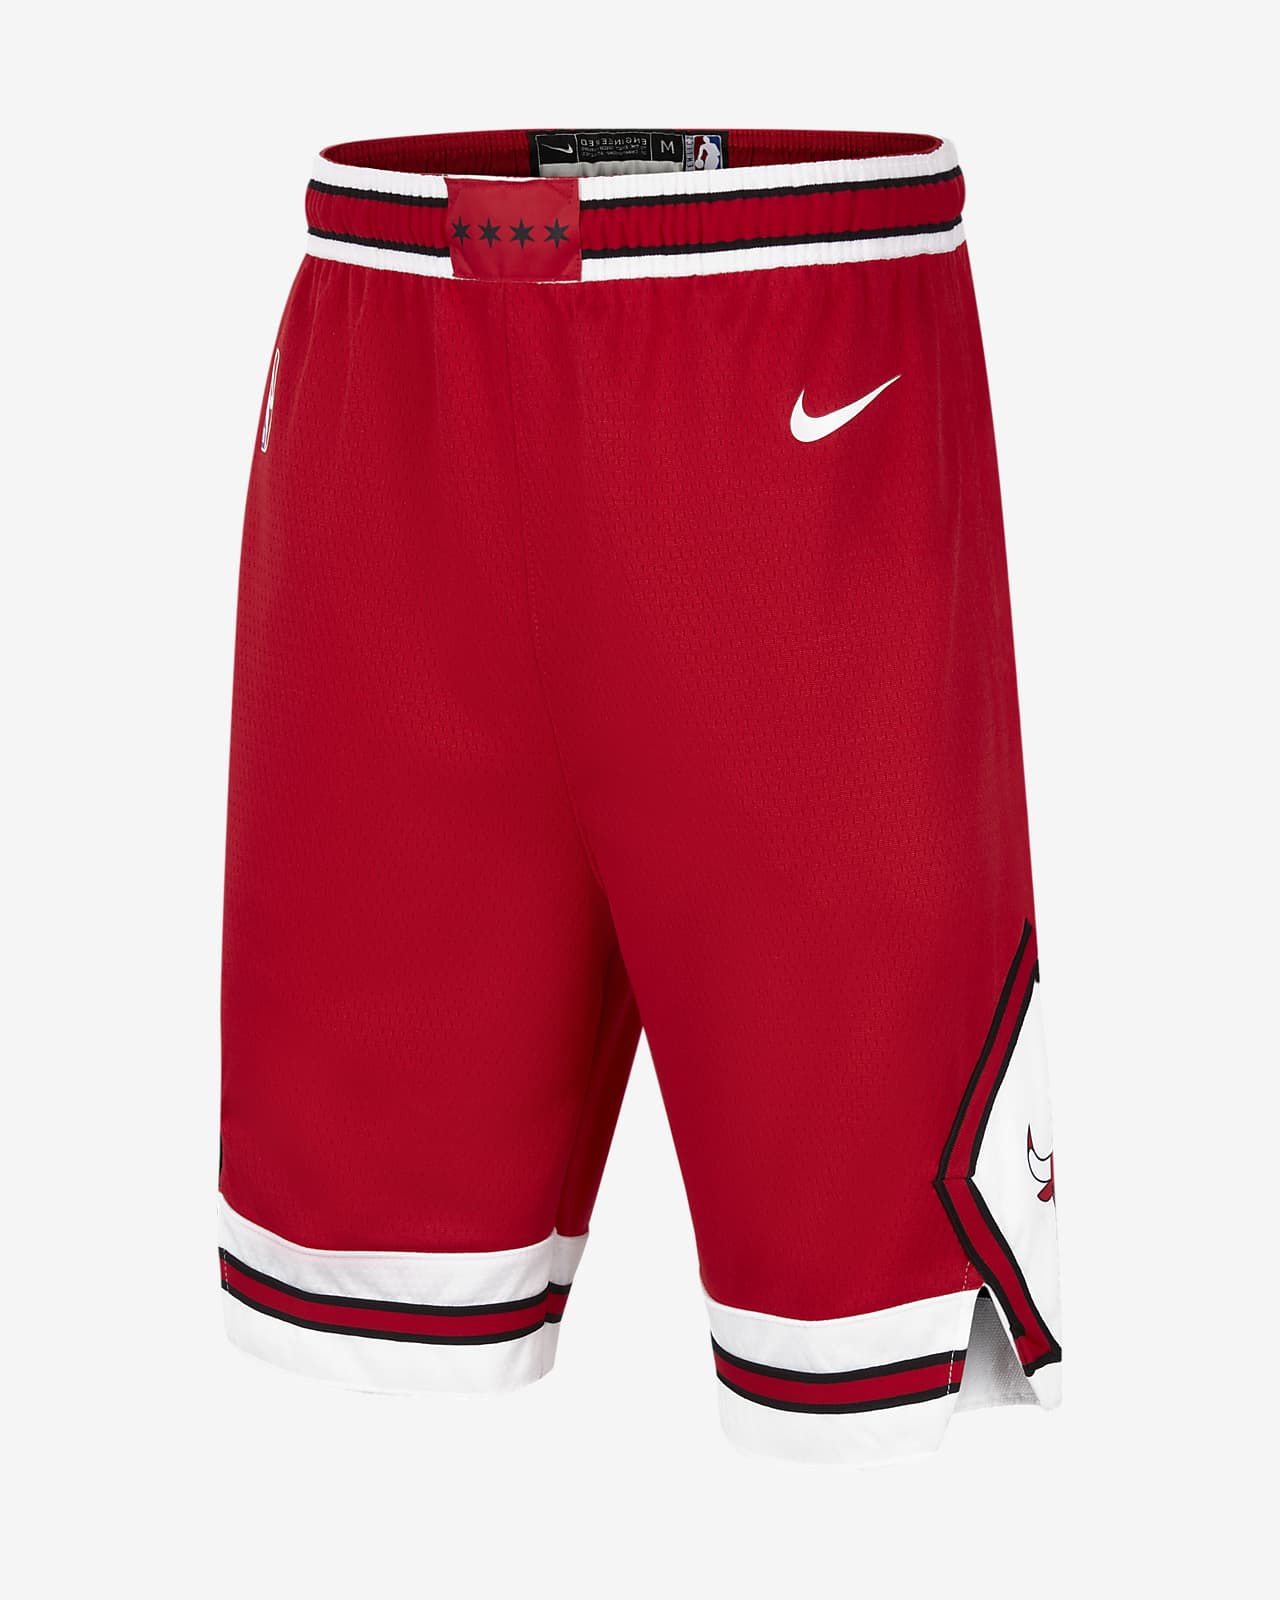 Σορτς NBA Σικάγο Μπουλς Nike Icon Edition Swingman για μεγάλα παιδιά